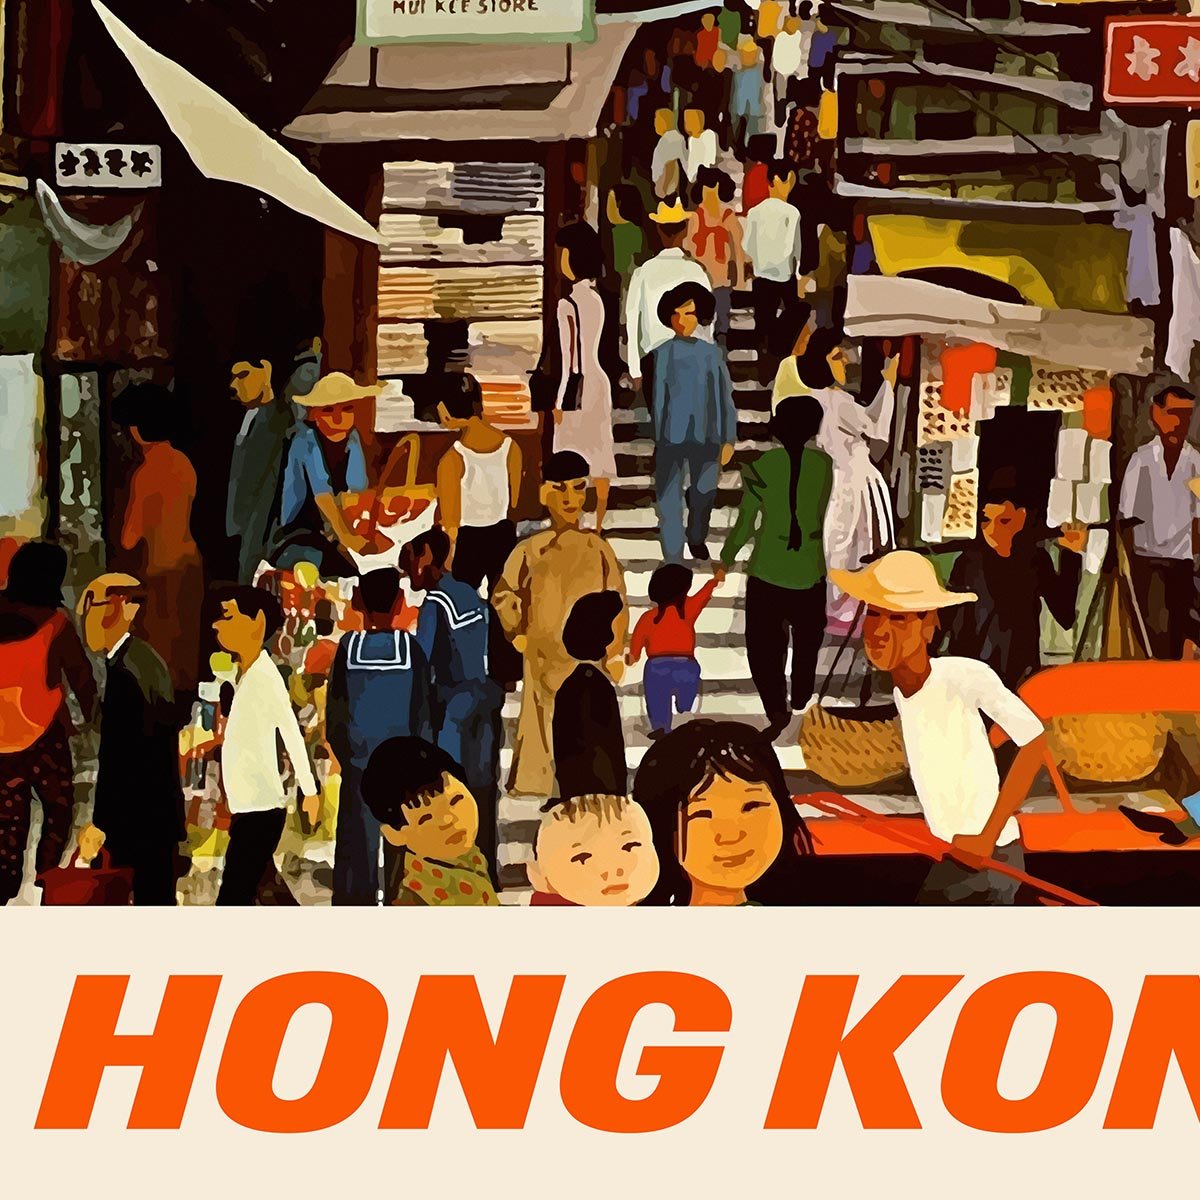 Hong Kong Travel Poster